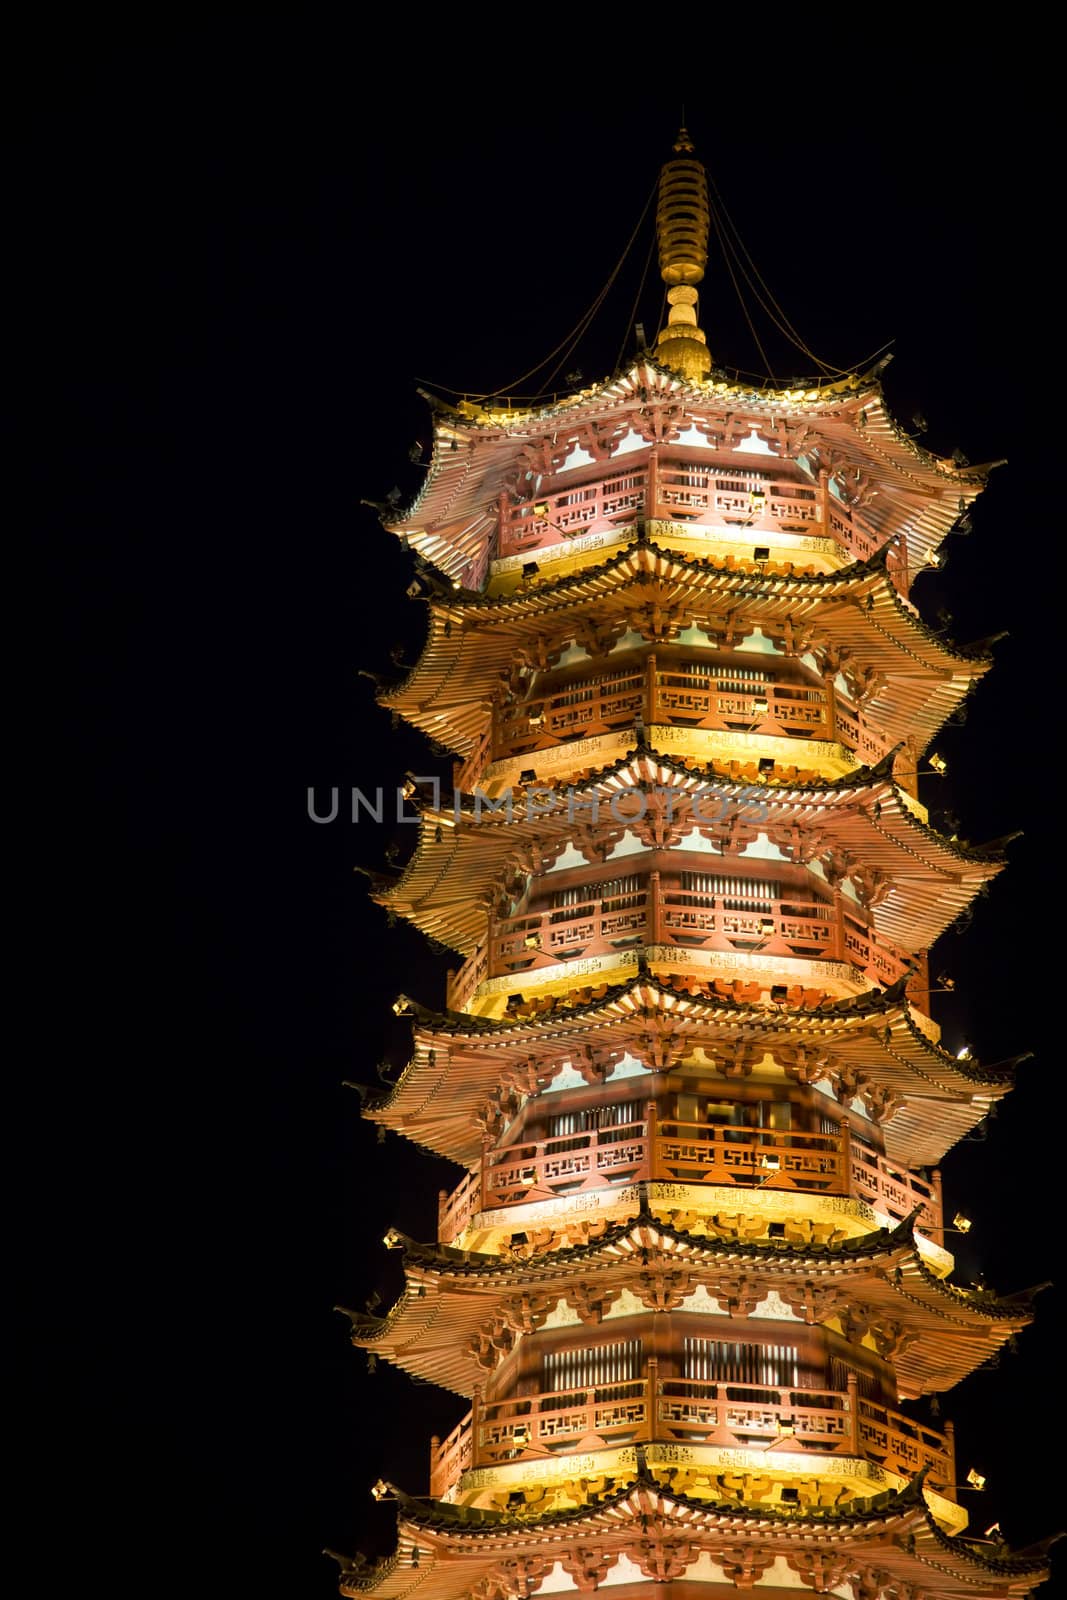 Night image of the Mulong Lake Pagoda at Guilin, China.